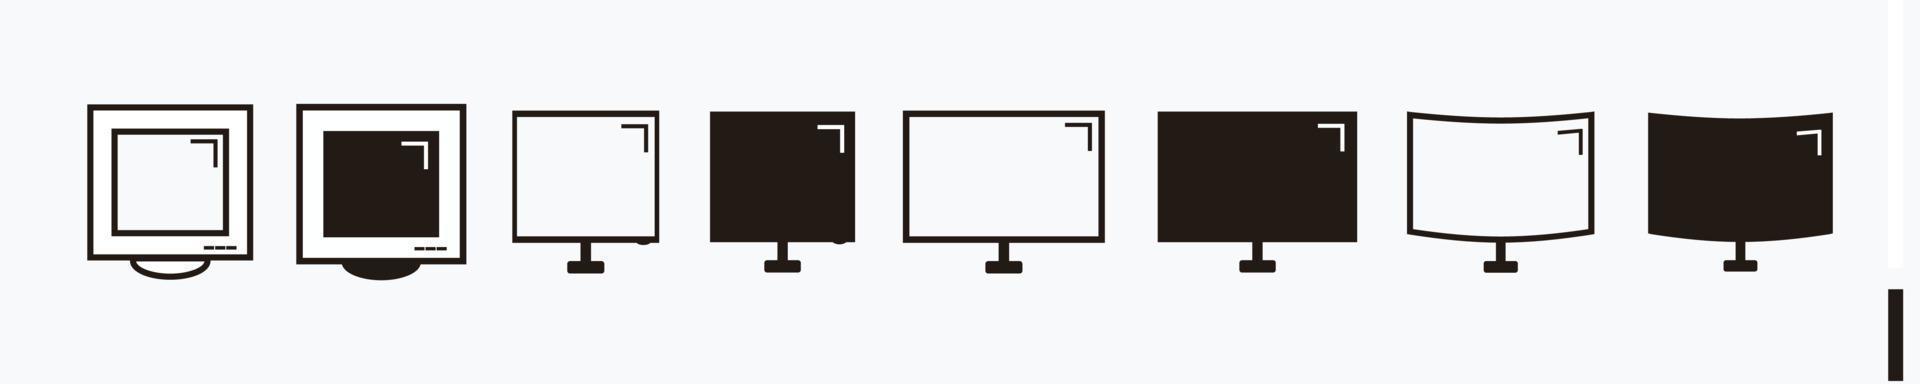 monitor computer, alter monitor, kurvenmonitor geräteset - schwarz und weiß isoliert auf weiß vektor